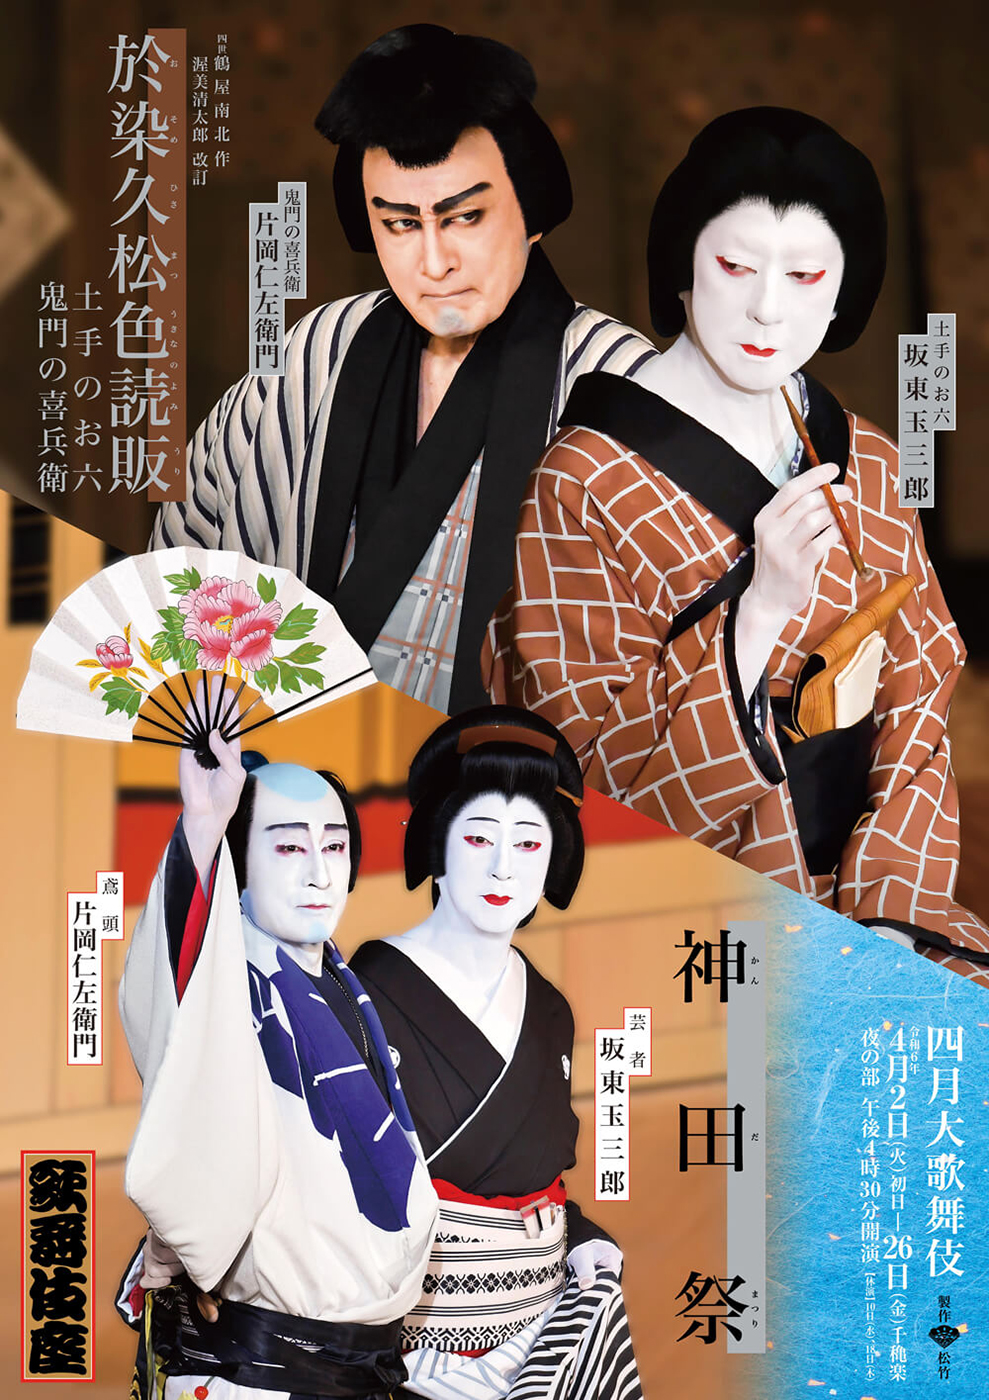 四月大歌舞伎 夜の部『於染久松色読販』『神田祭』『四季』歌舞伎座